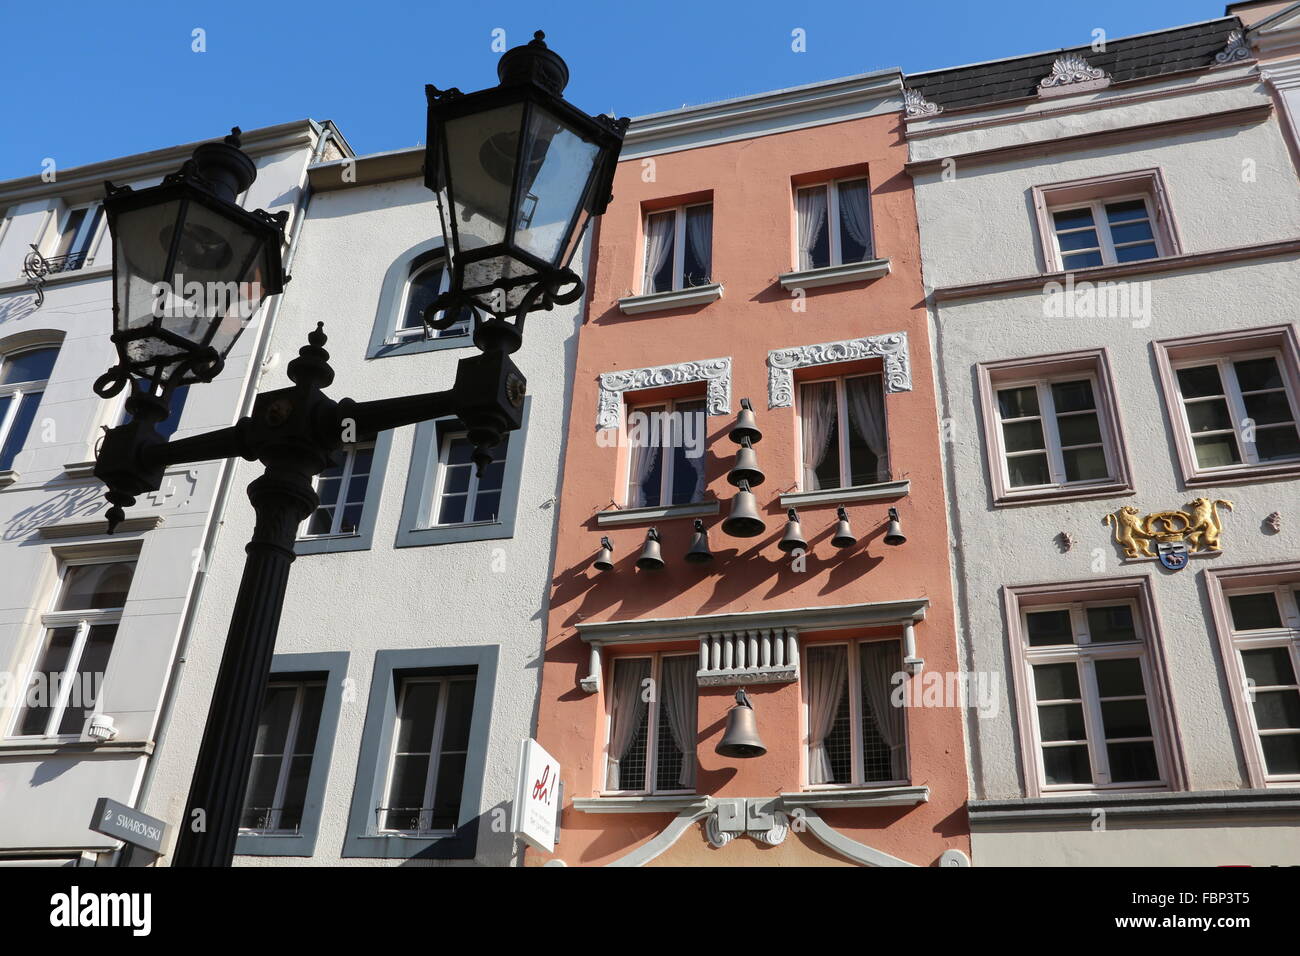 Anciens bâtiments de la ville de Bonn, Allemagne Banque D'Images